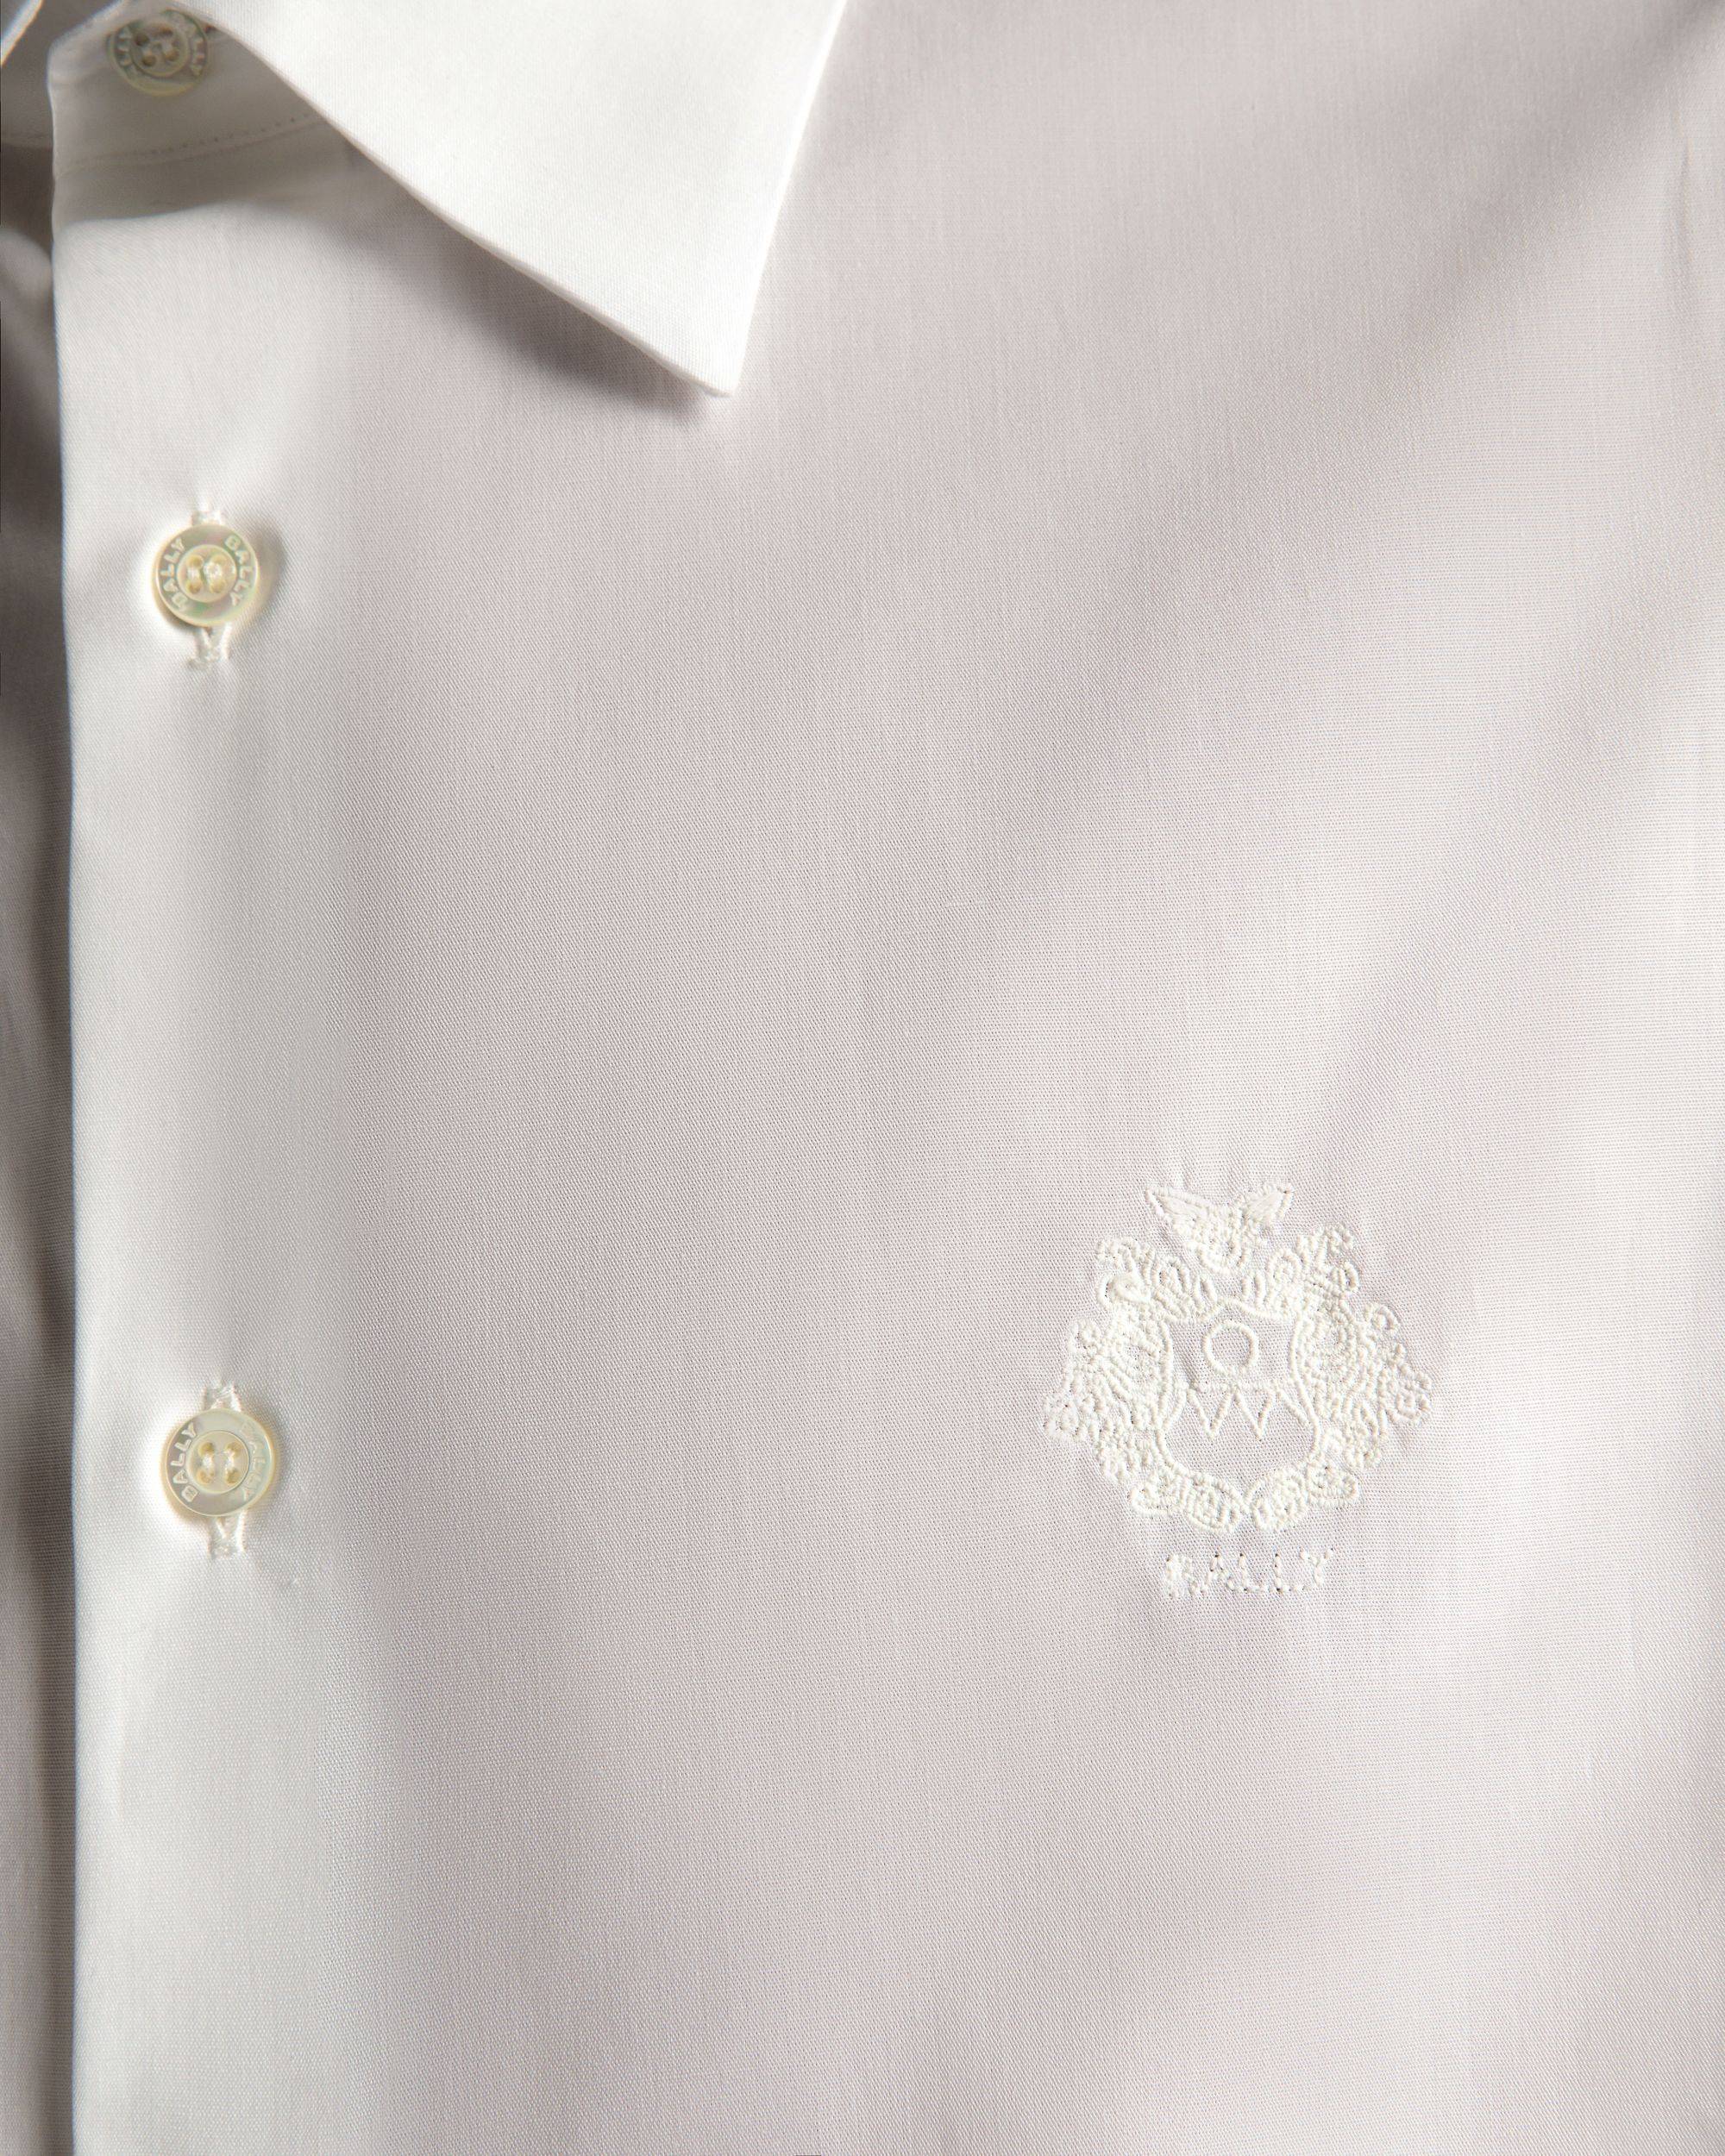 Herrenhemd aus weißer Baumwolle | Bally | Model getragen Detail